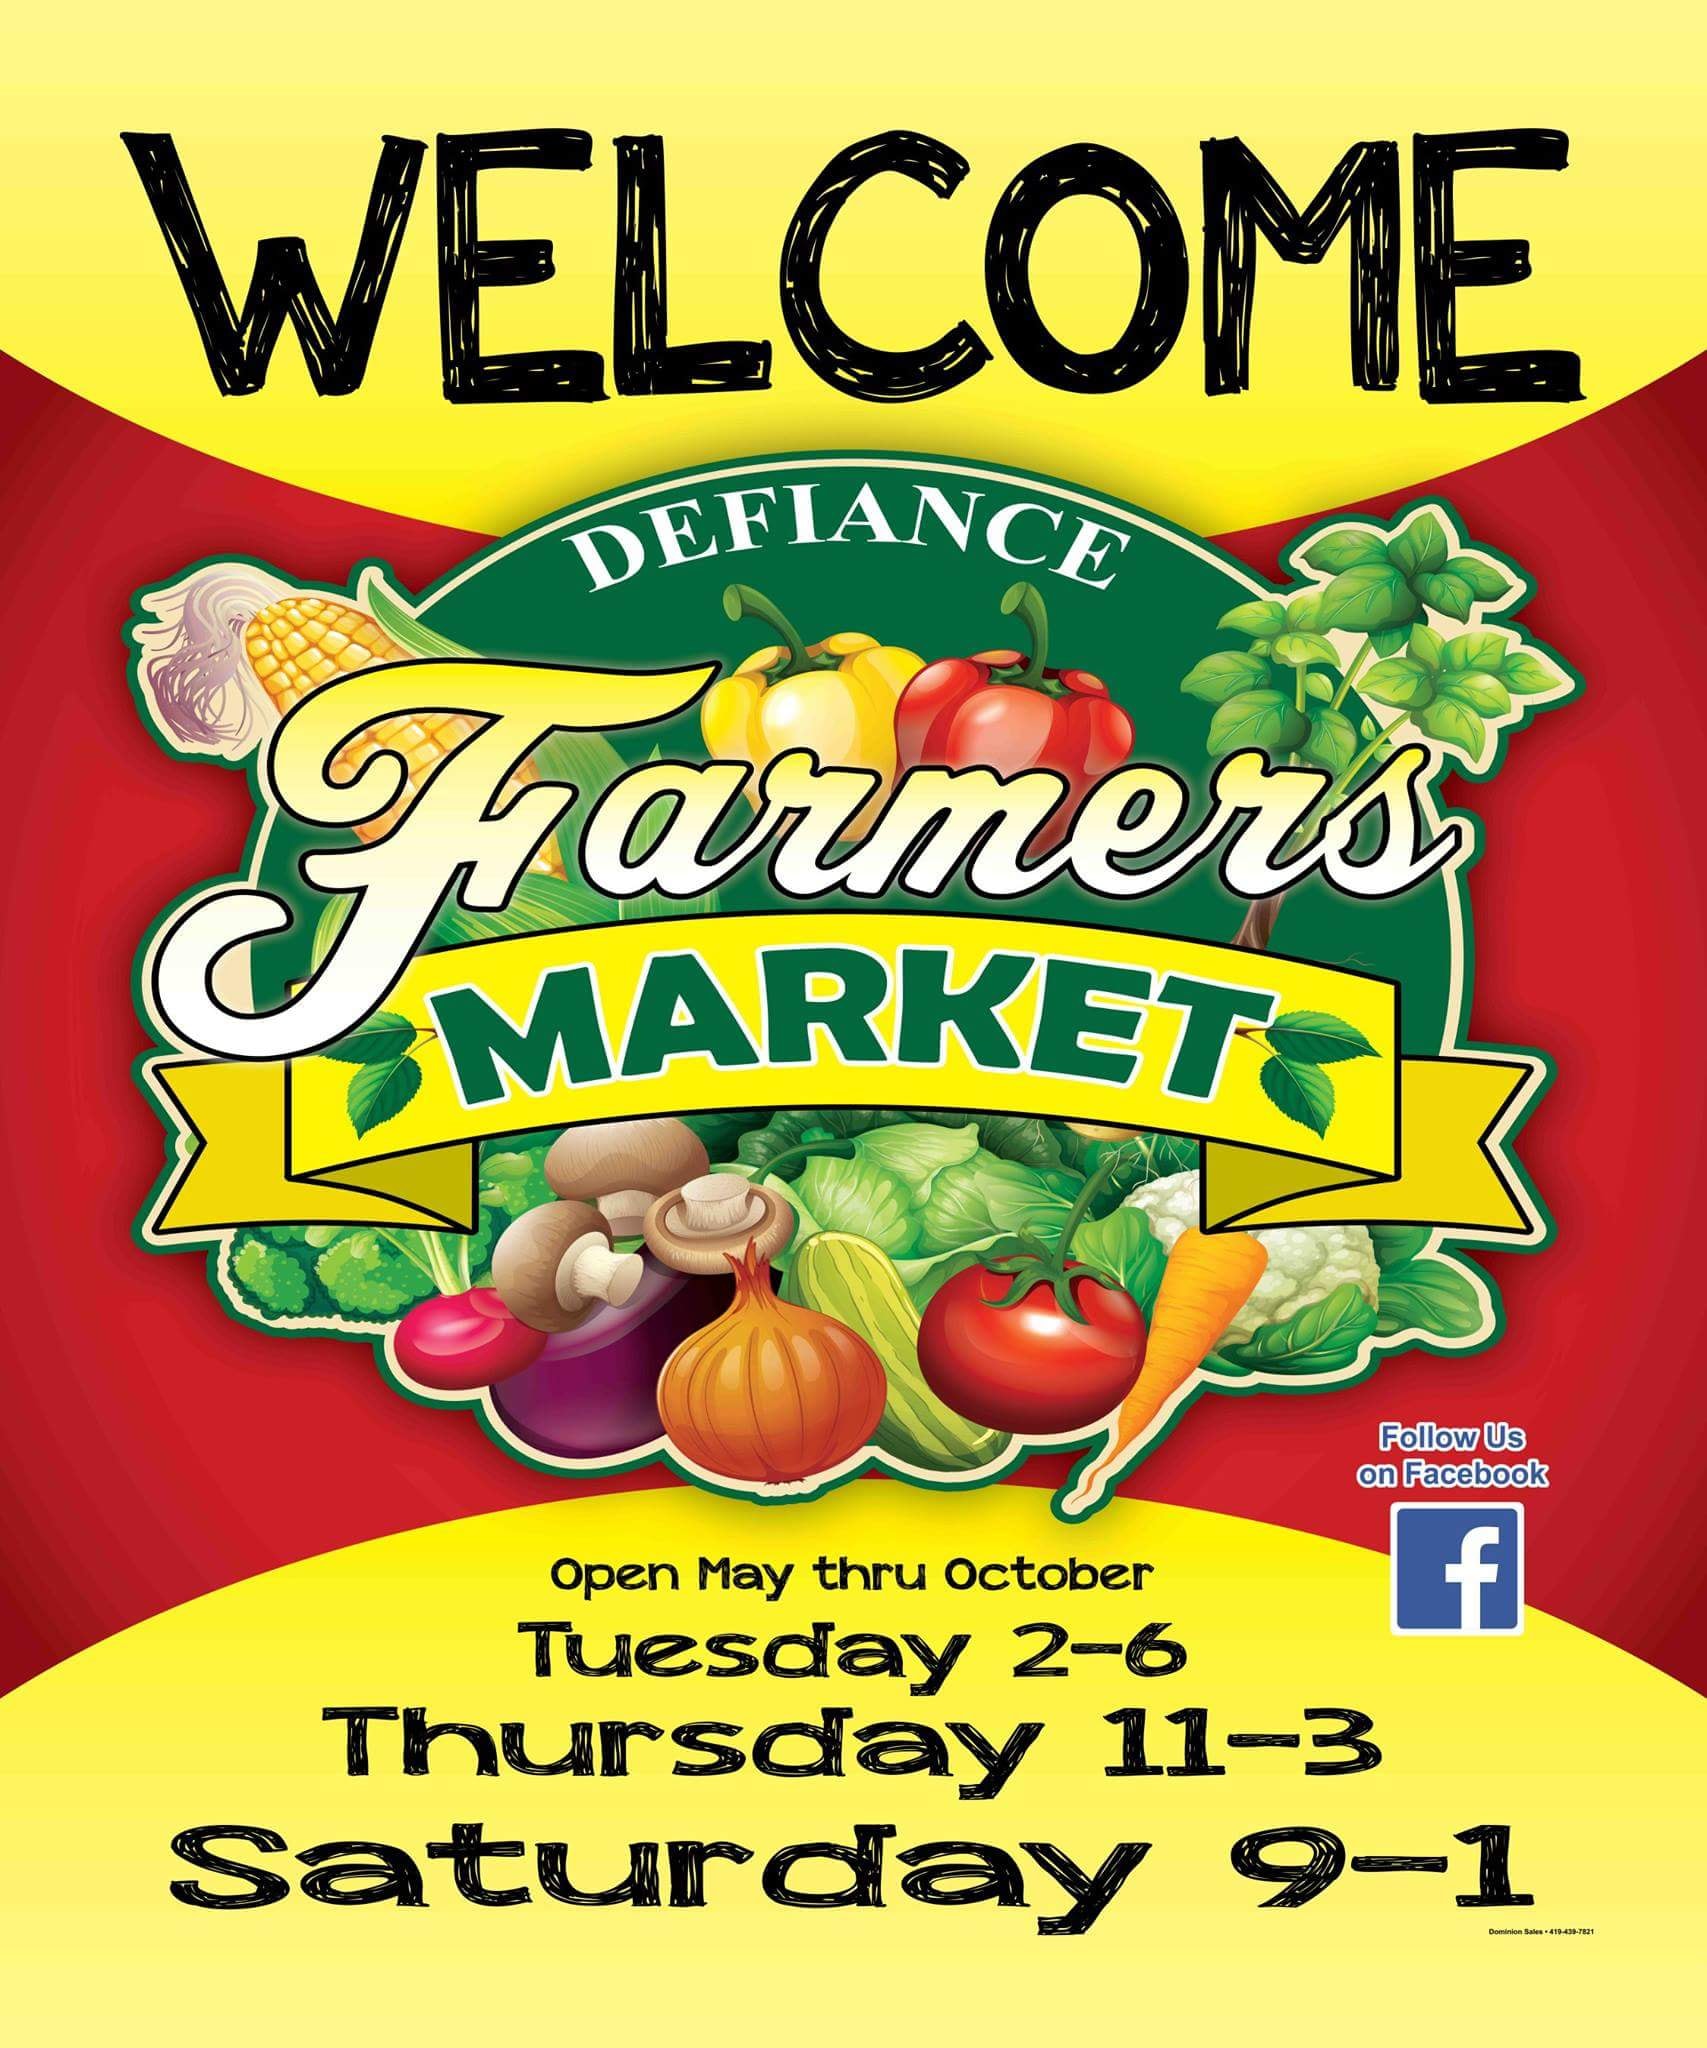 Defiance Farmers Market